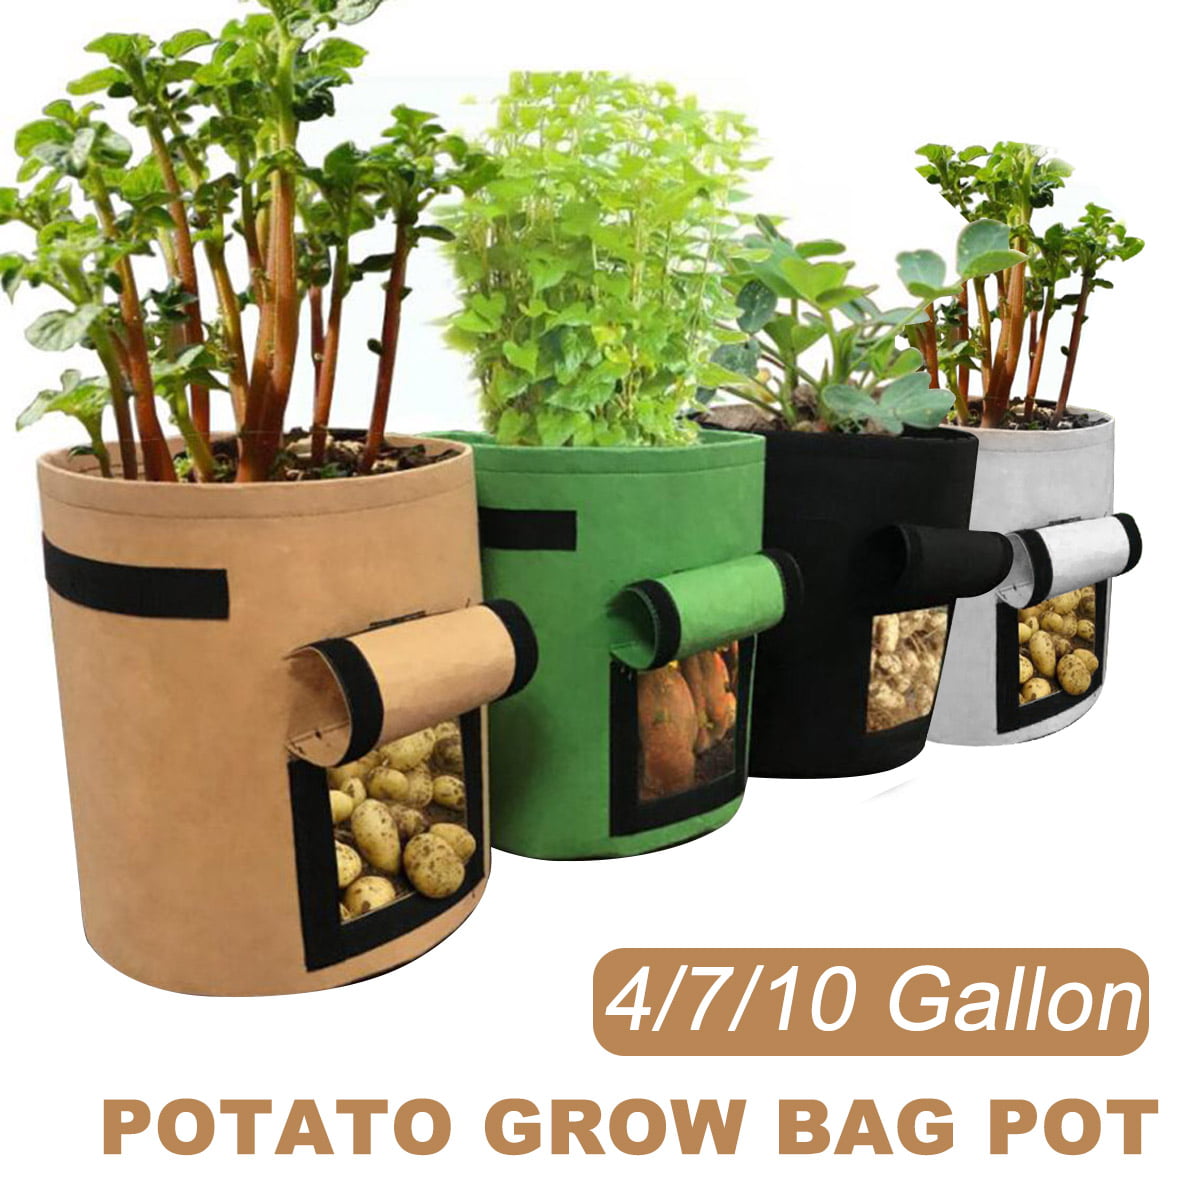 5 7 10 Gallon Potato Planting Bag Pot Planter Growing Garden Vegetable Container 